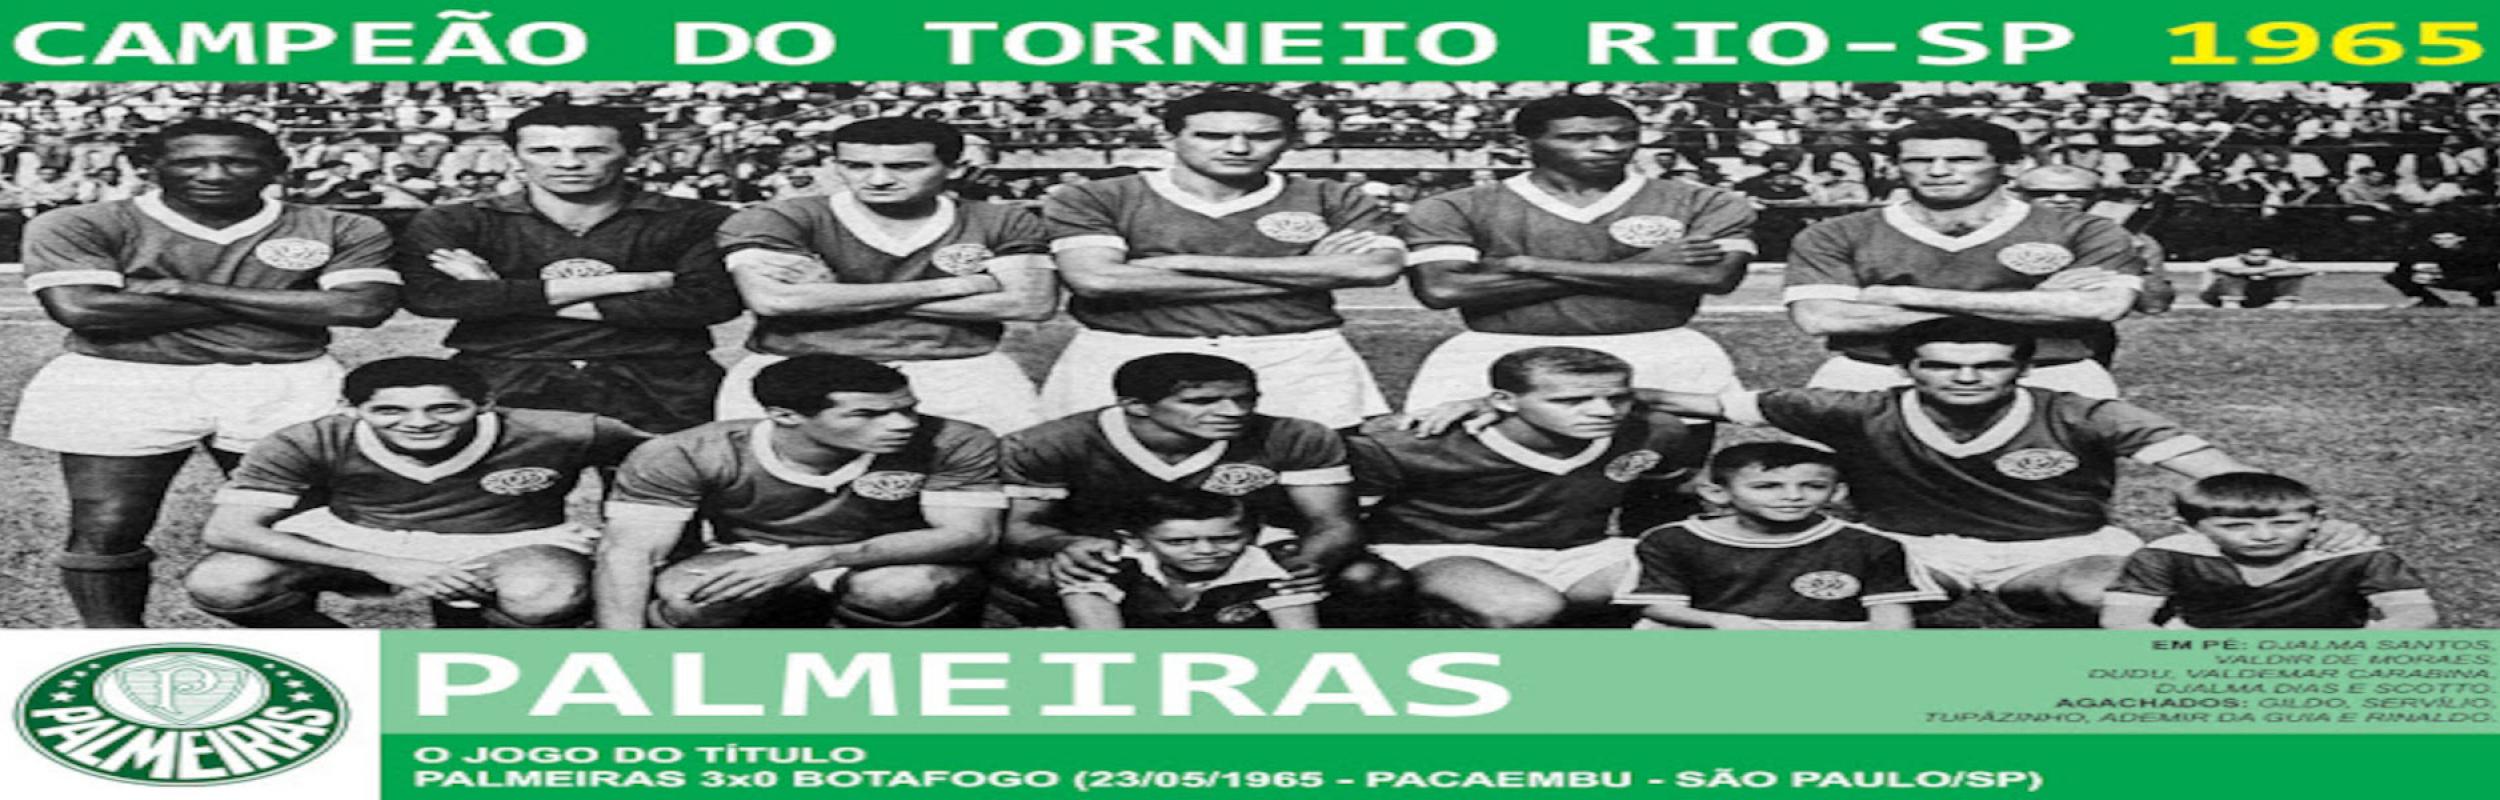 Torneio Rio-São Paulo 1965